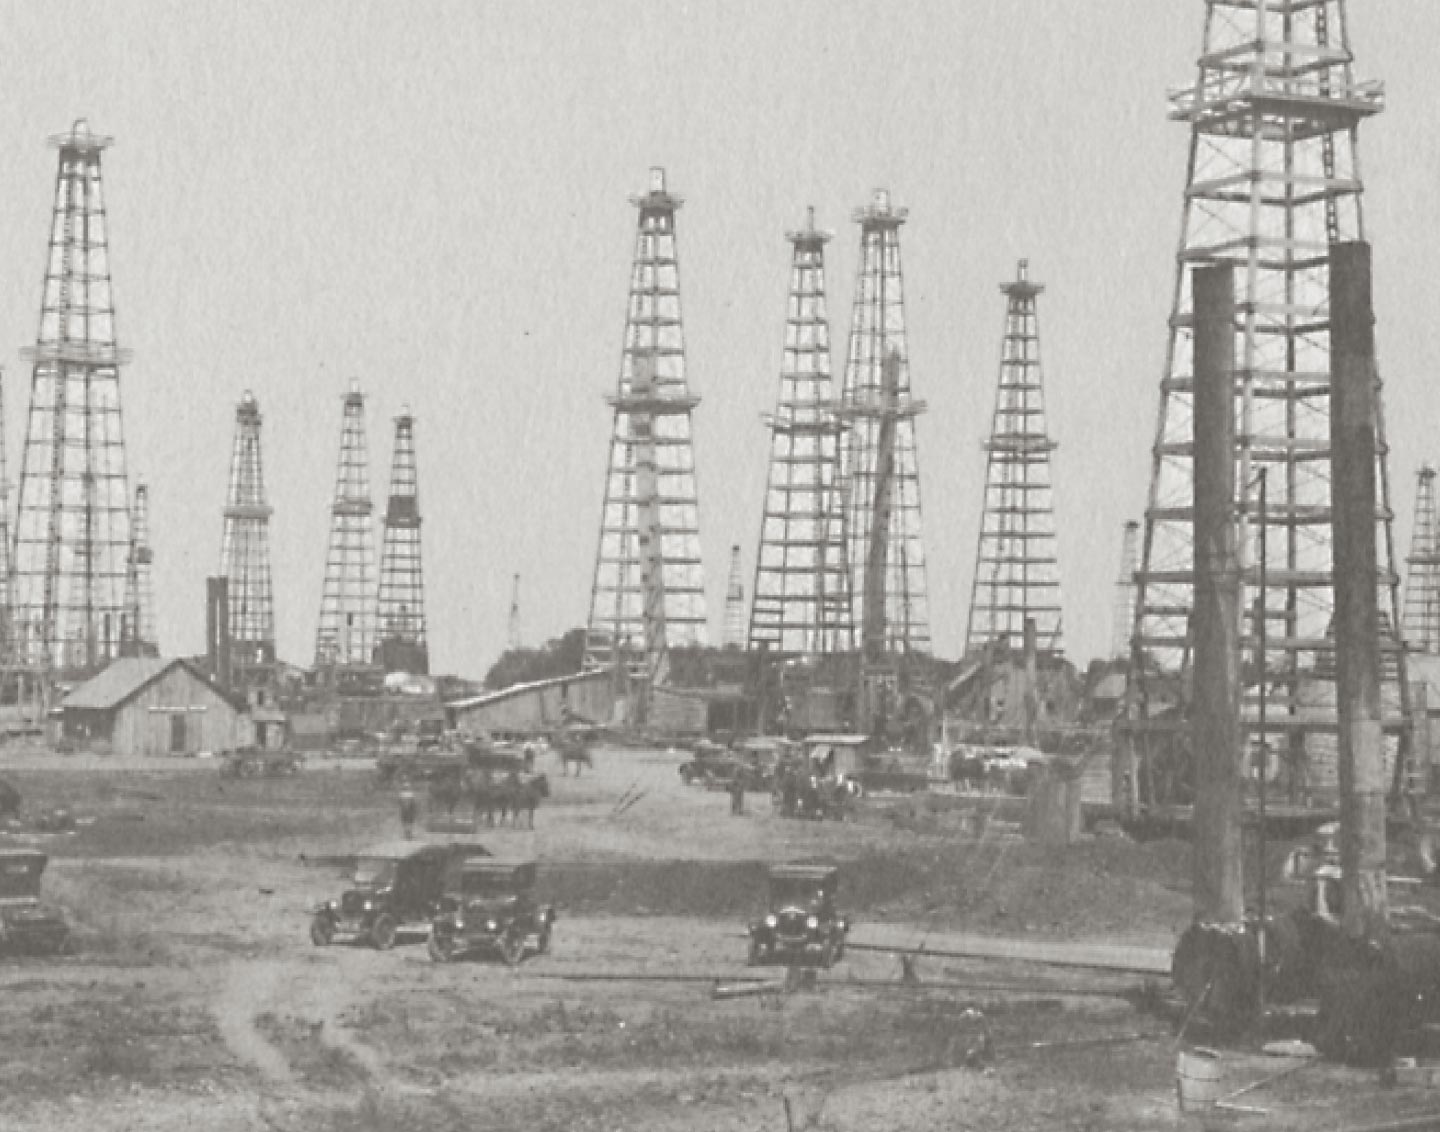 Field of oil rigs